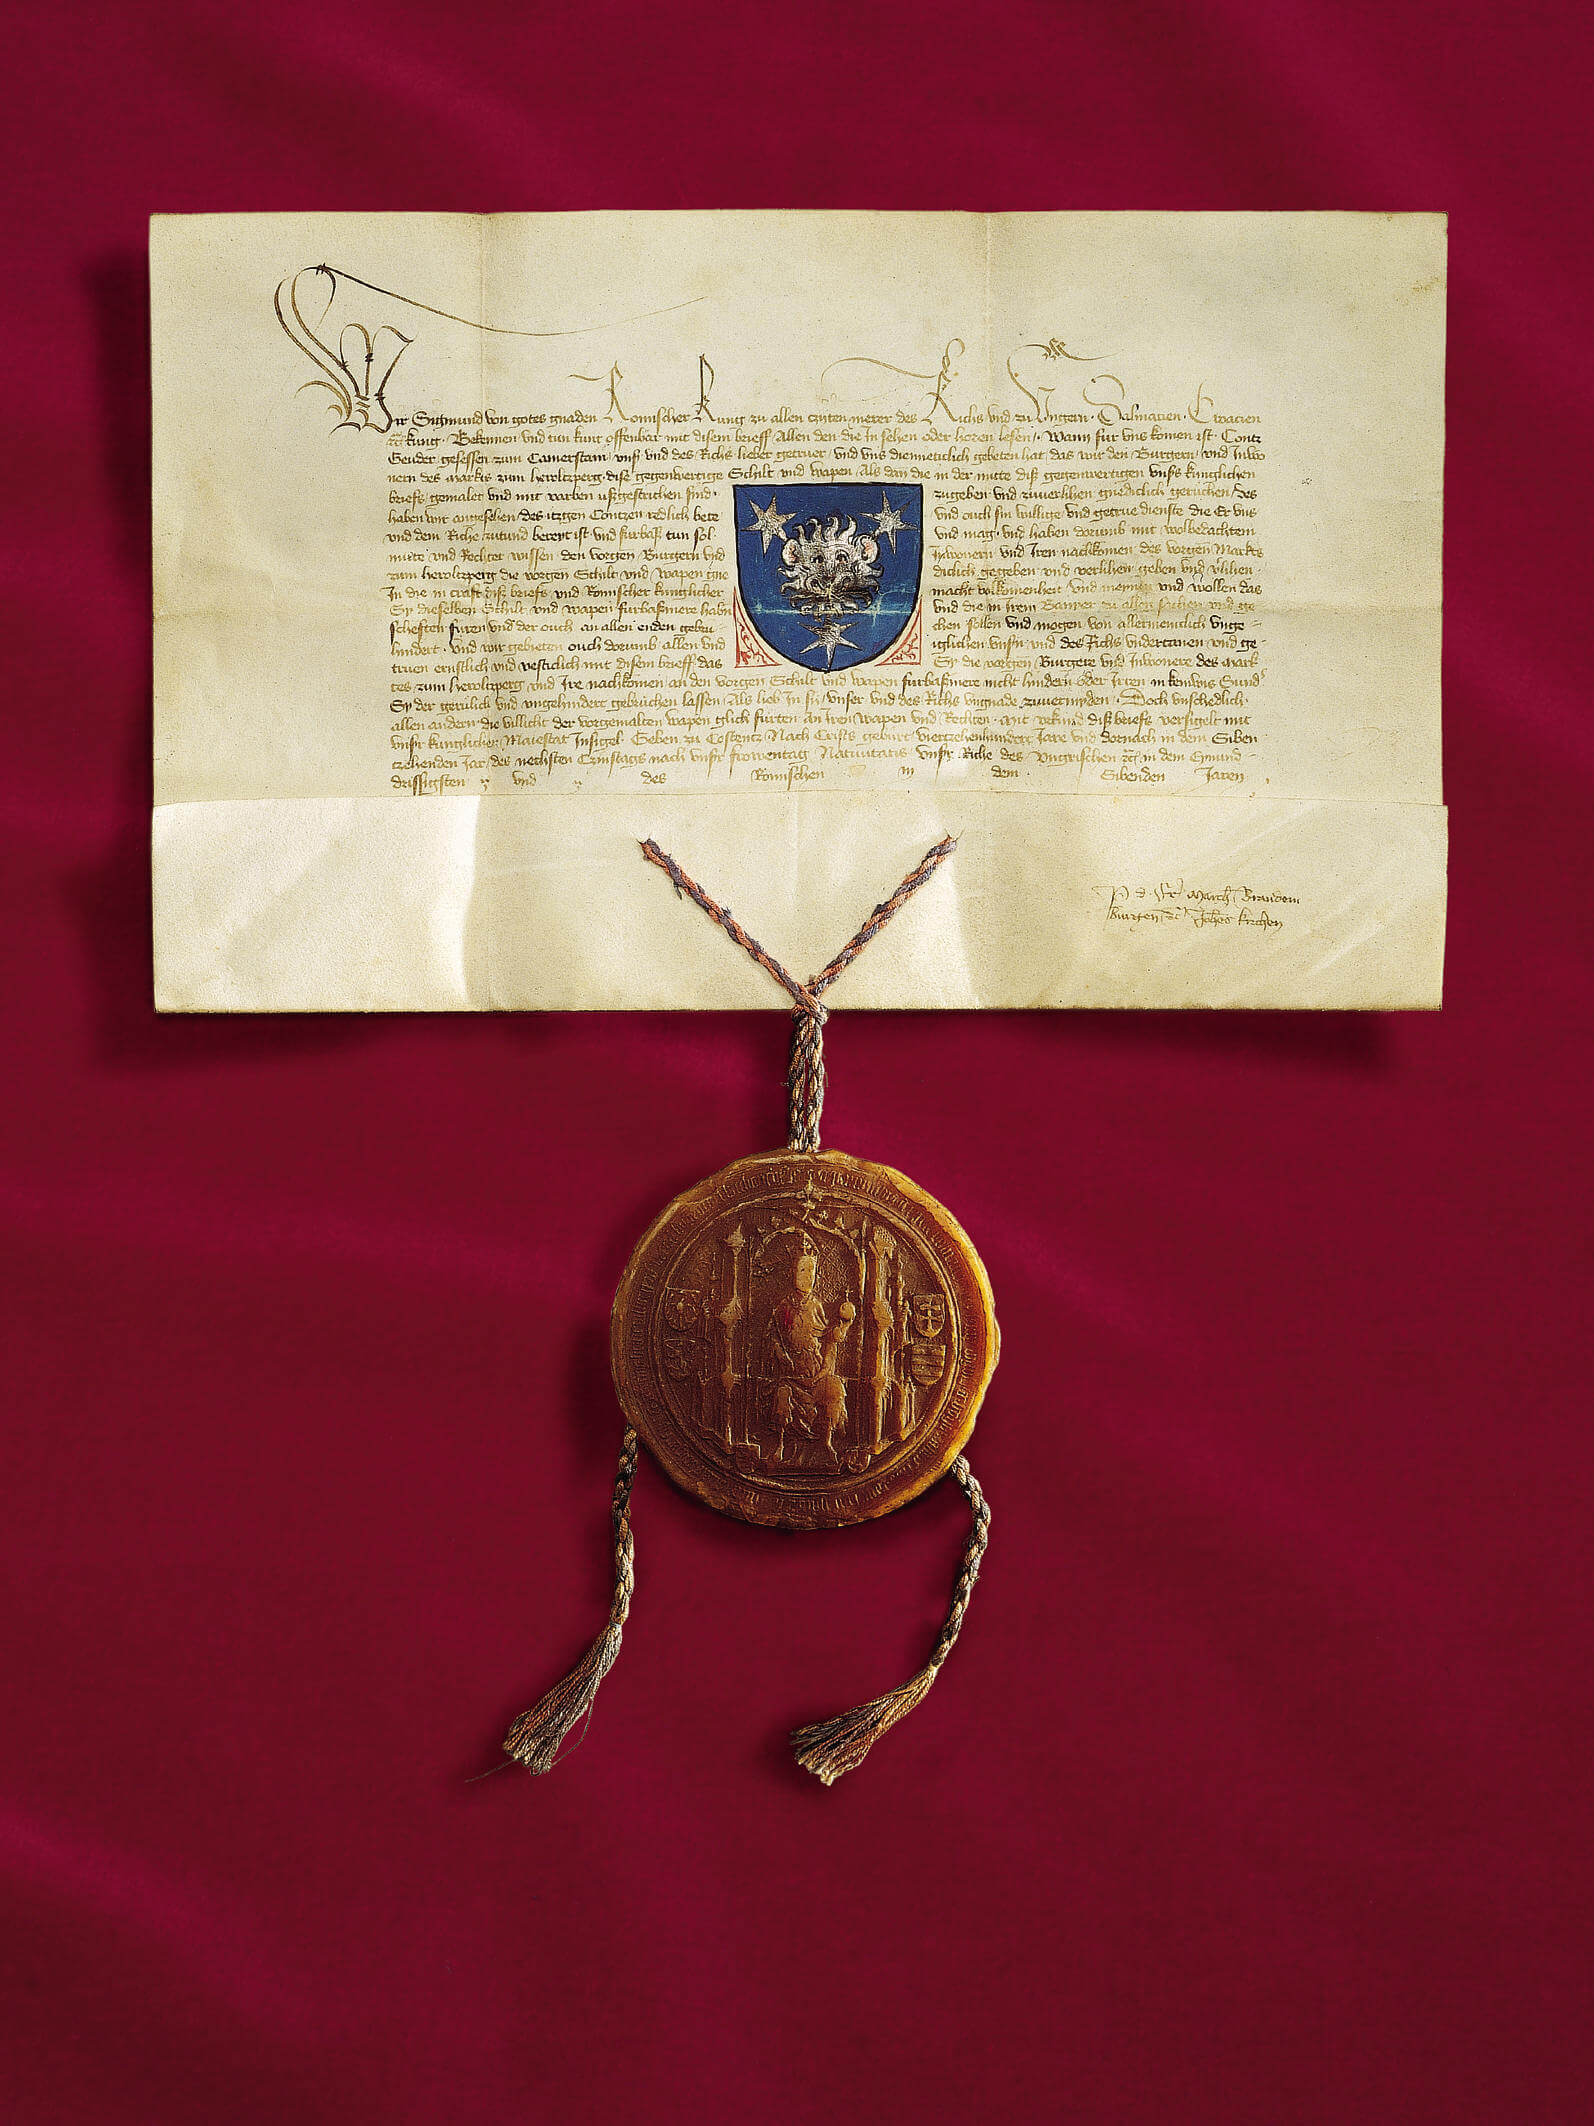 Urkunde zur Wappenverleihung mit dem Heroldsbgergerf Wappen, 1417, 38 x 24 cm, ebg0054